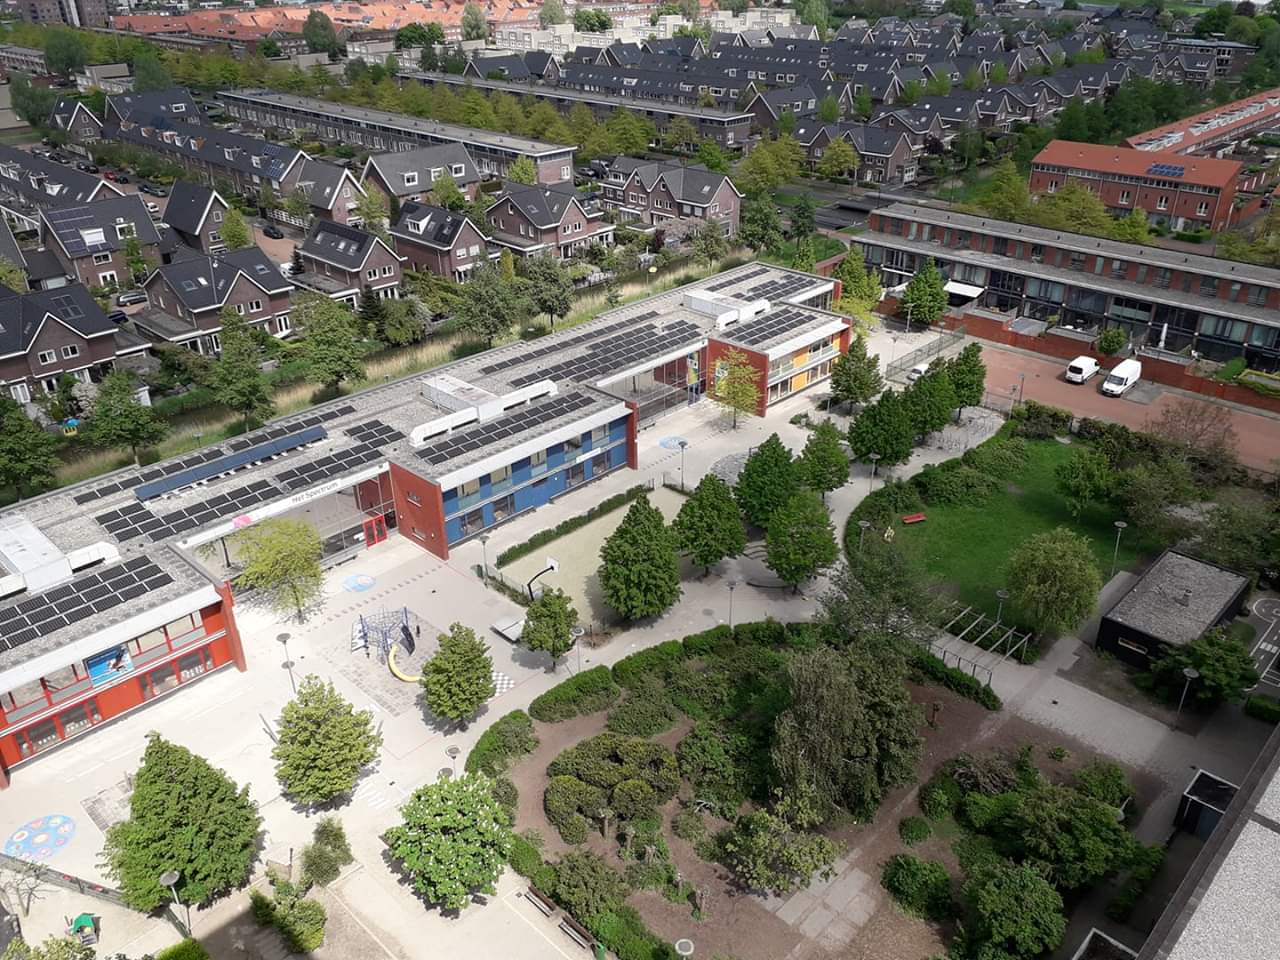 Basisschool Het Spectrum Rotterdam Nesselande speurtocht in de wijk thuisonderwijs corona